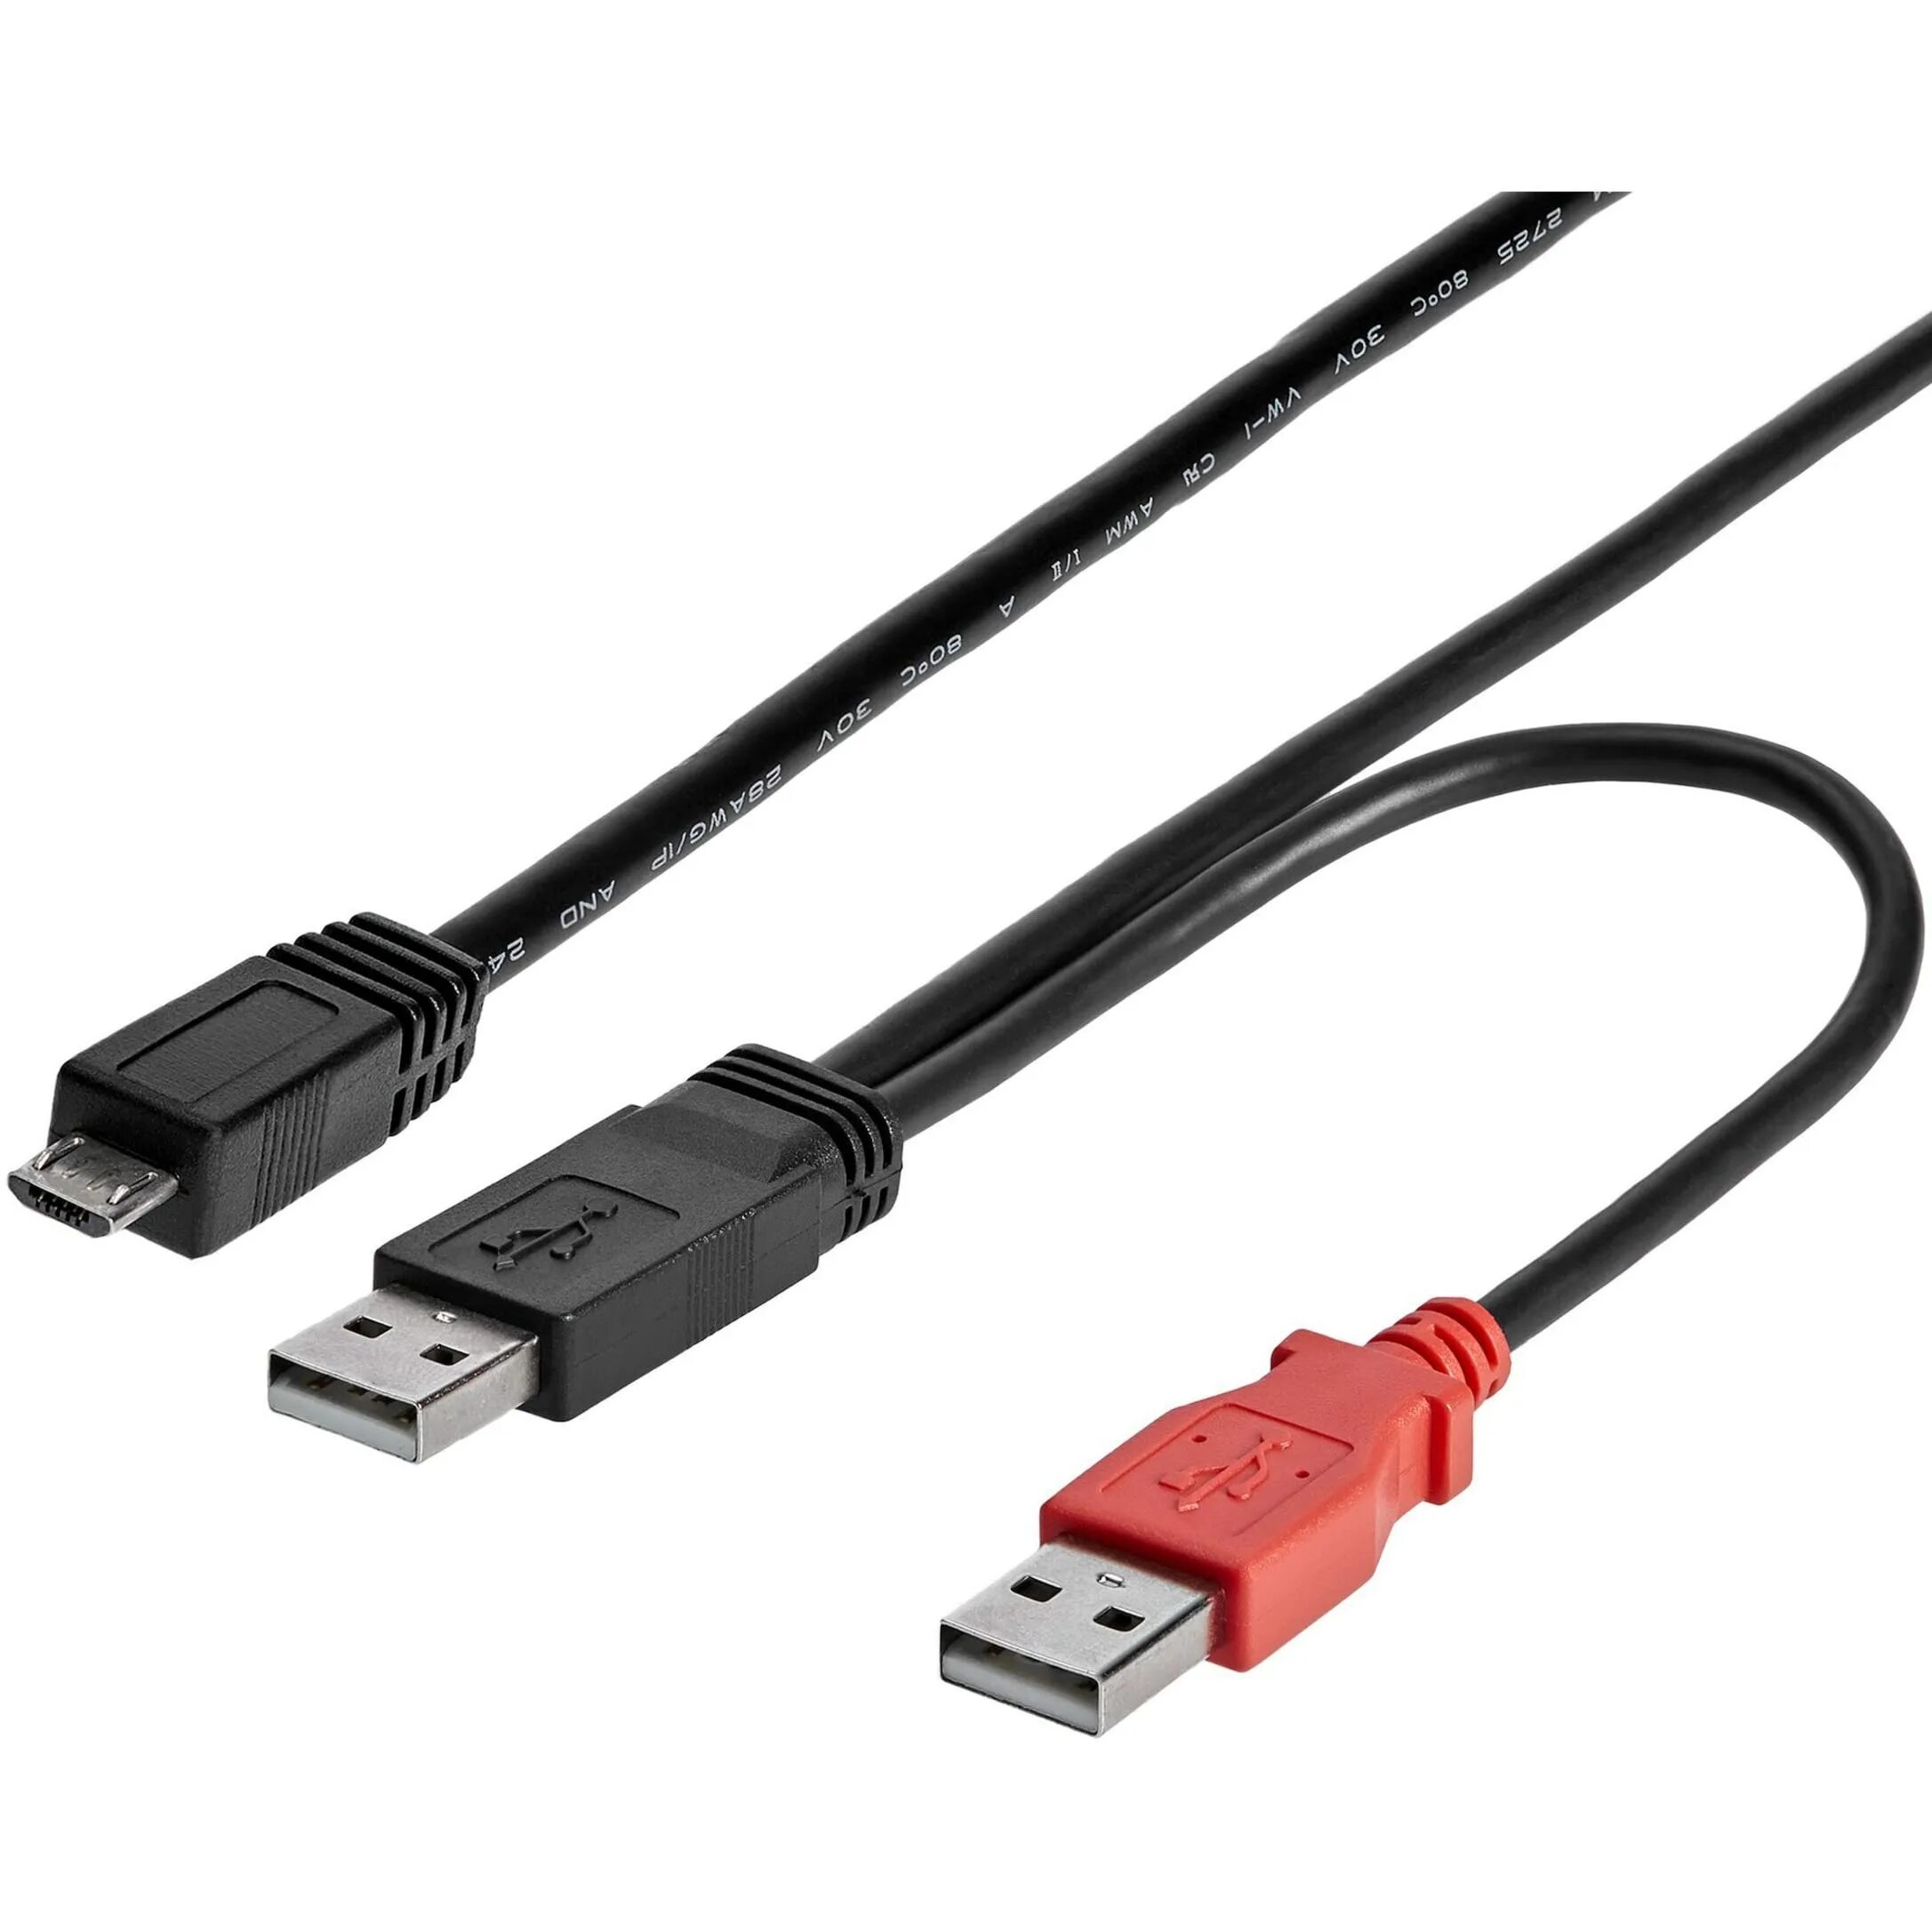 Внешняя микро. Кабель Micro USB 3.0 B 2 USB. USB 2.0 Micro-b. USB 2.0, MICROUSB 2.0. Кабель USB 2.0 A x2 to USB 2.0 B.